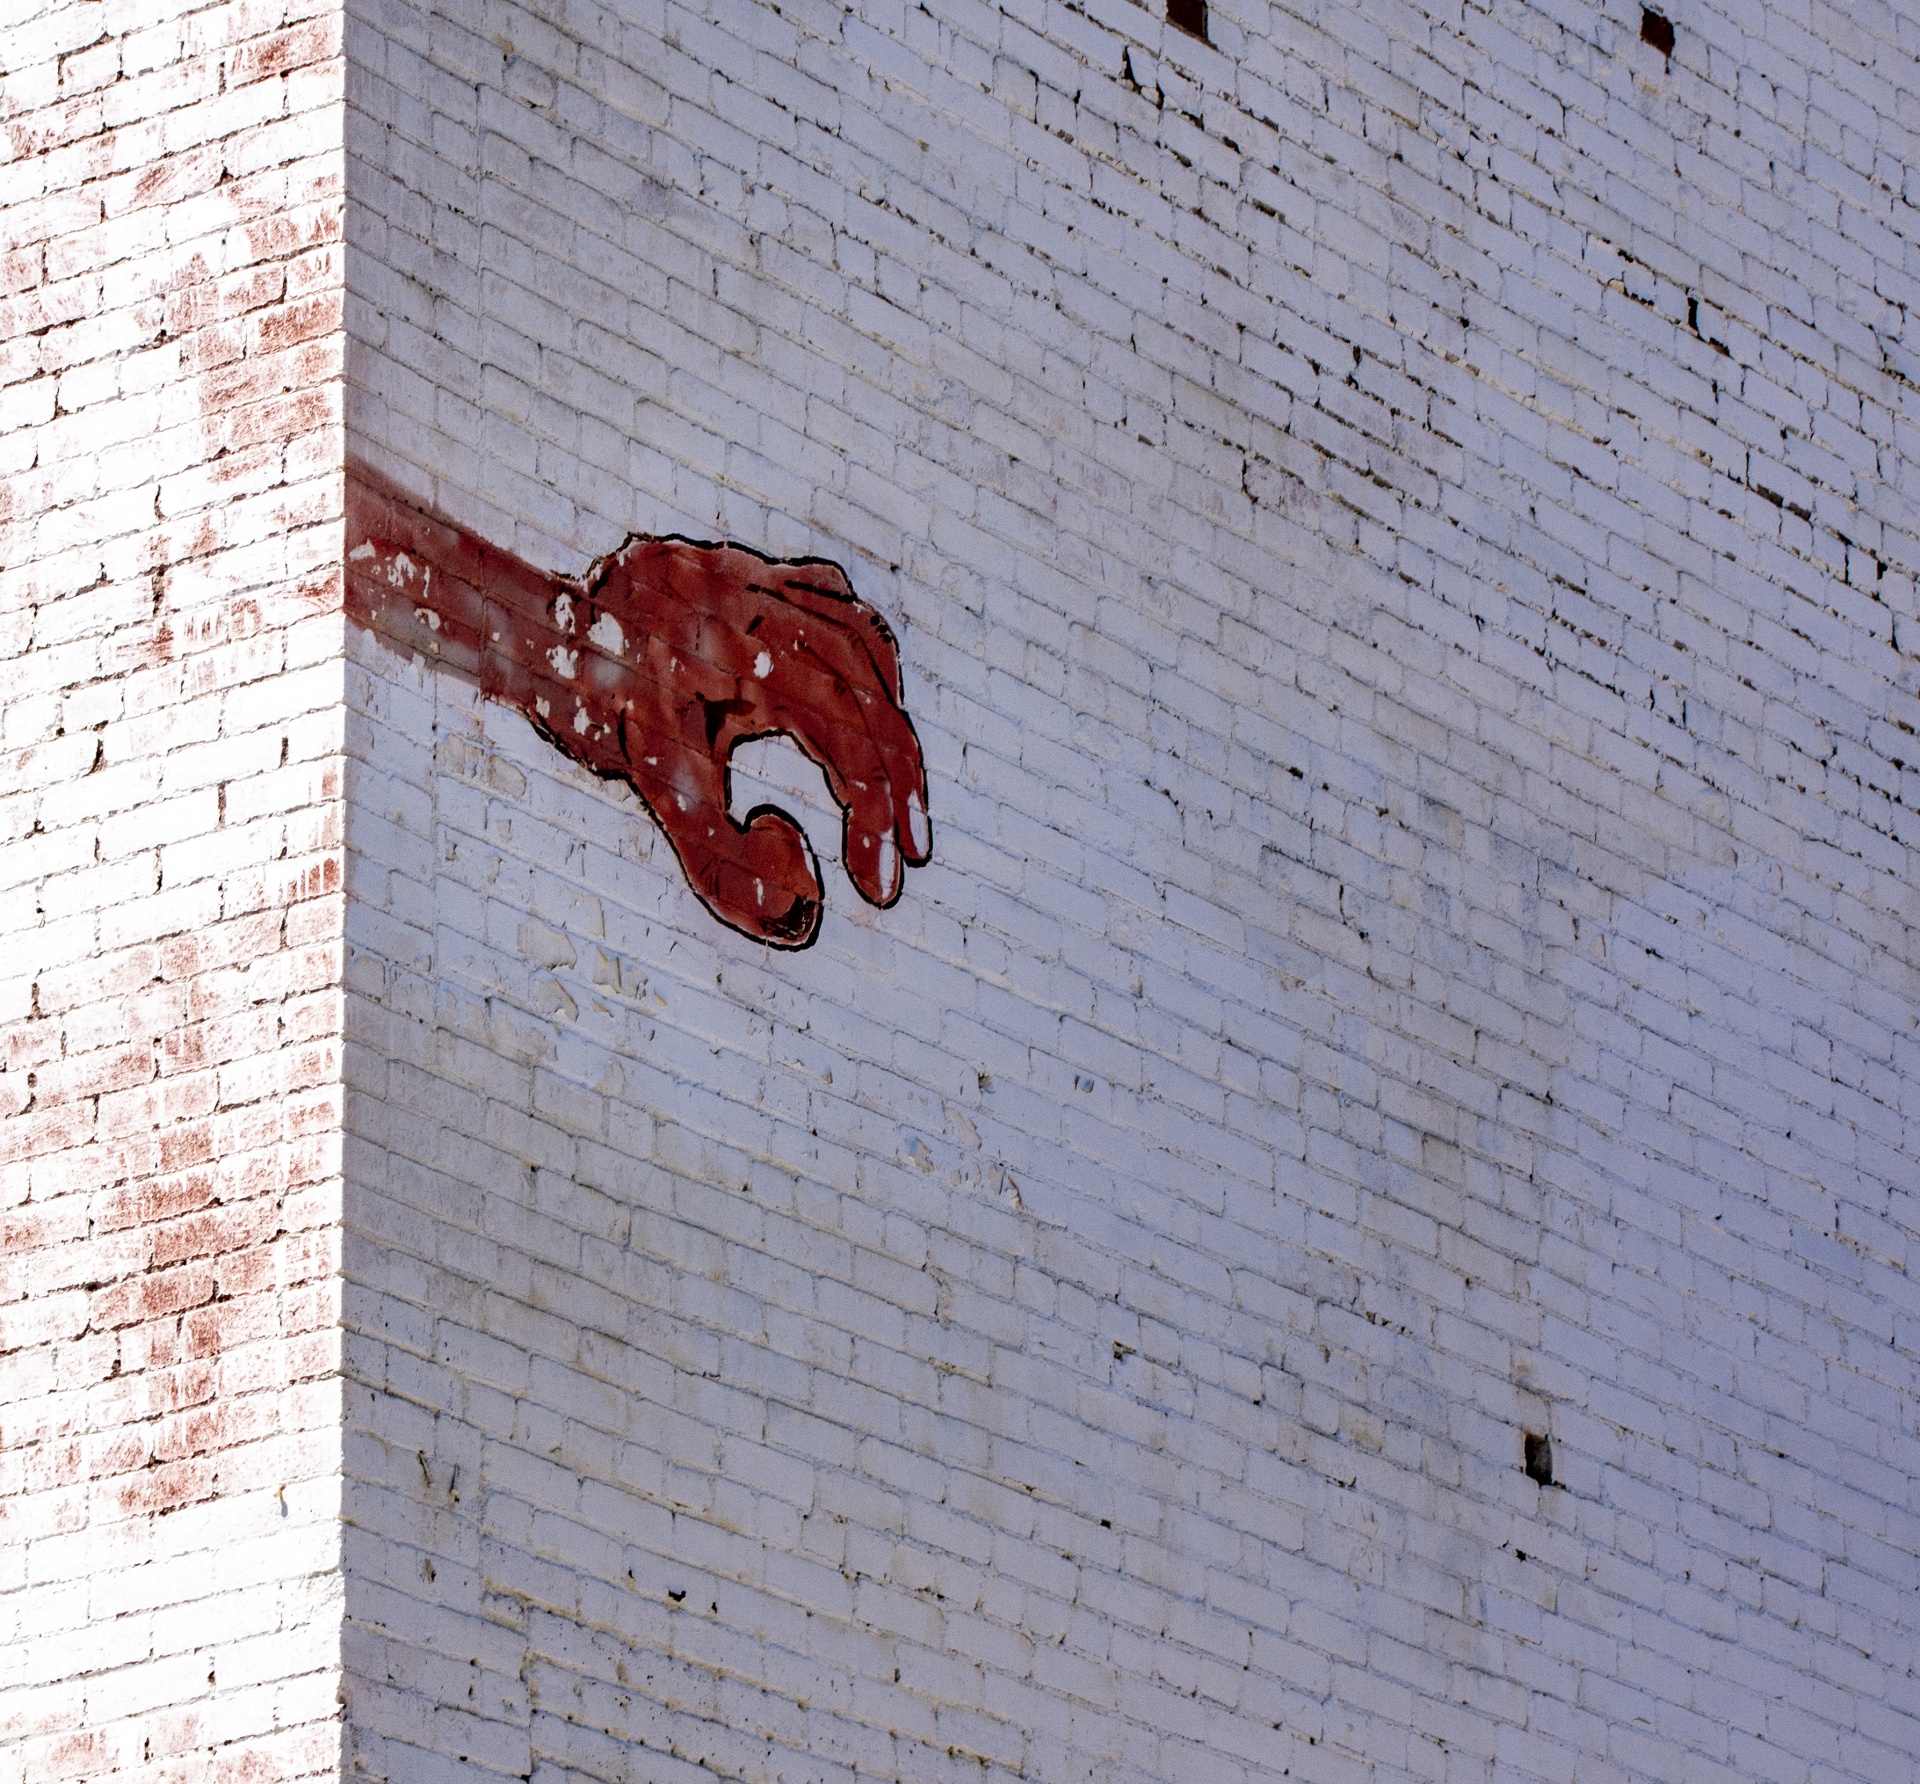 Graffiti Hand On Brick Wall